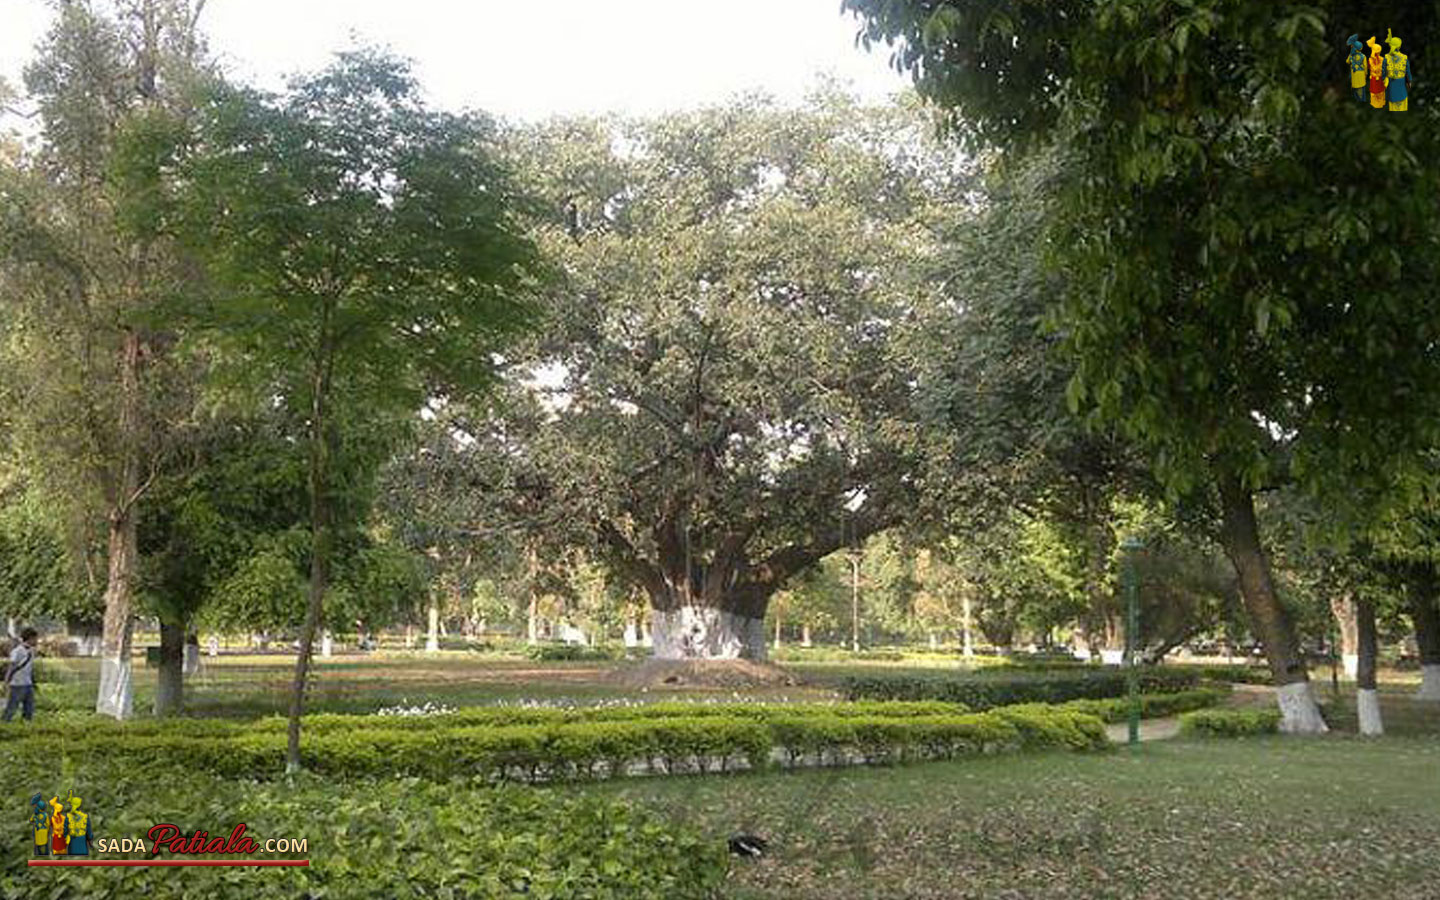 Patiala Baradari Gardens